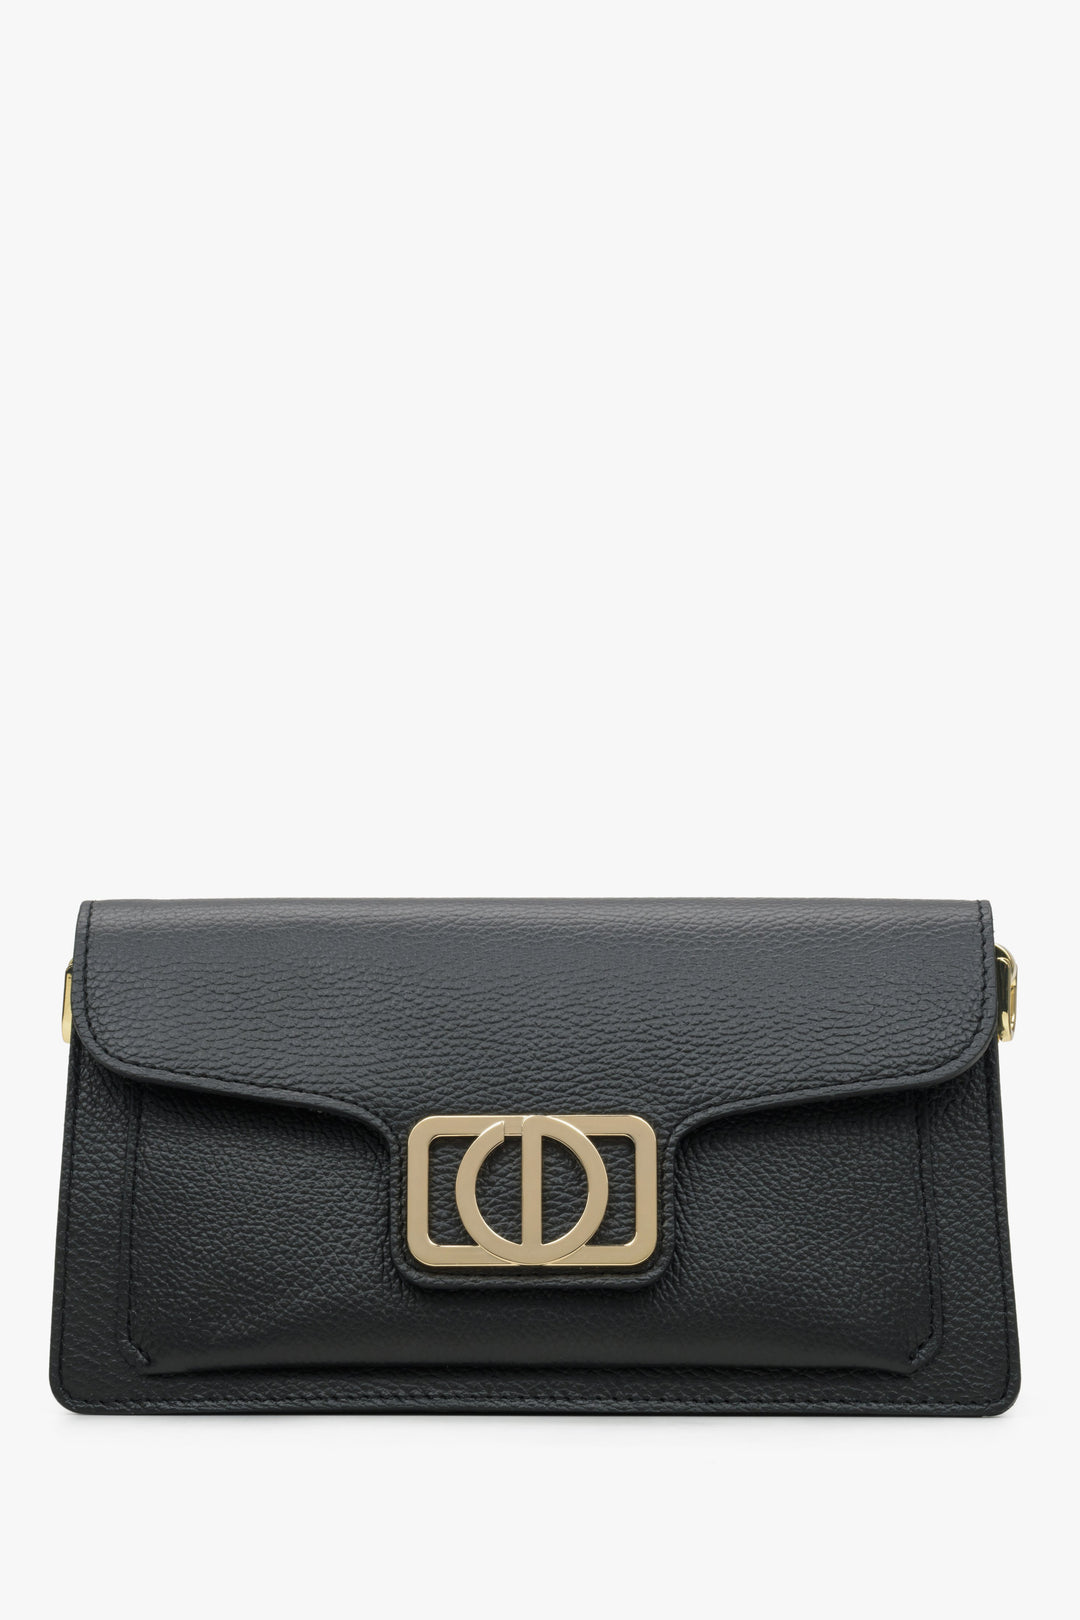 Women's Black Shoulder Bag with Golden Hardware made of Italian Genuine Leather Estro ER00114785.